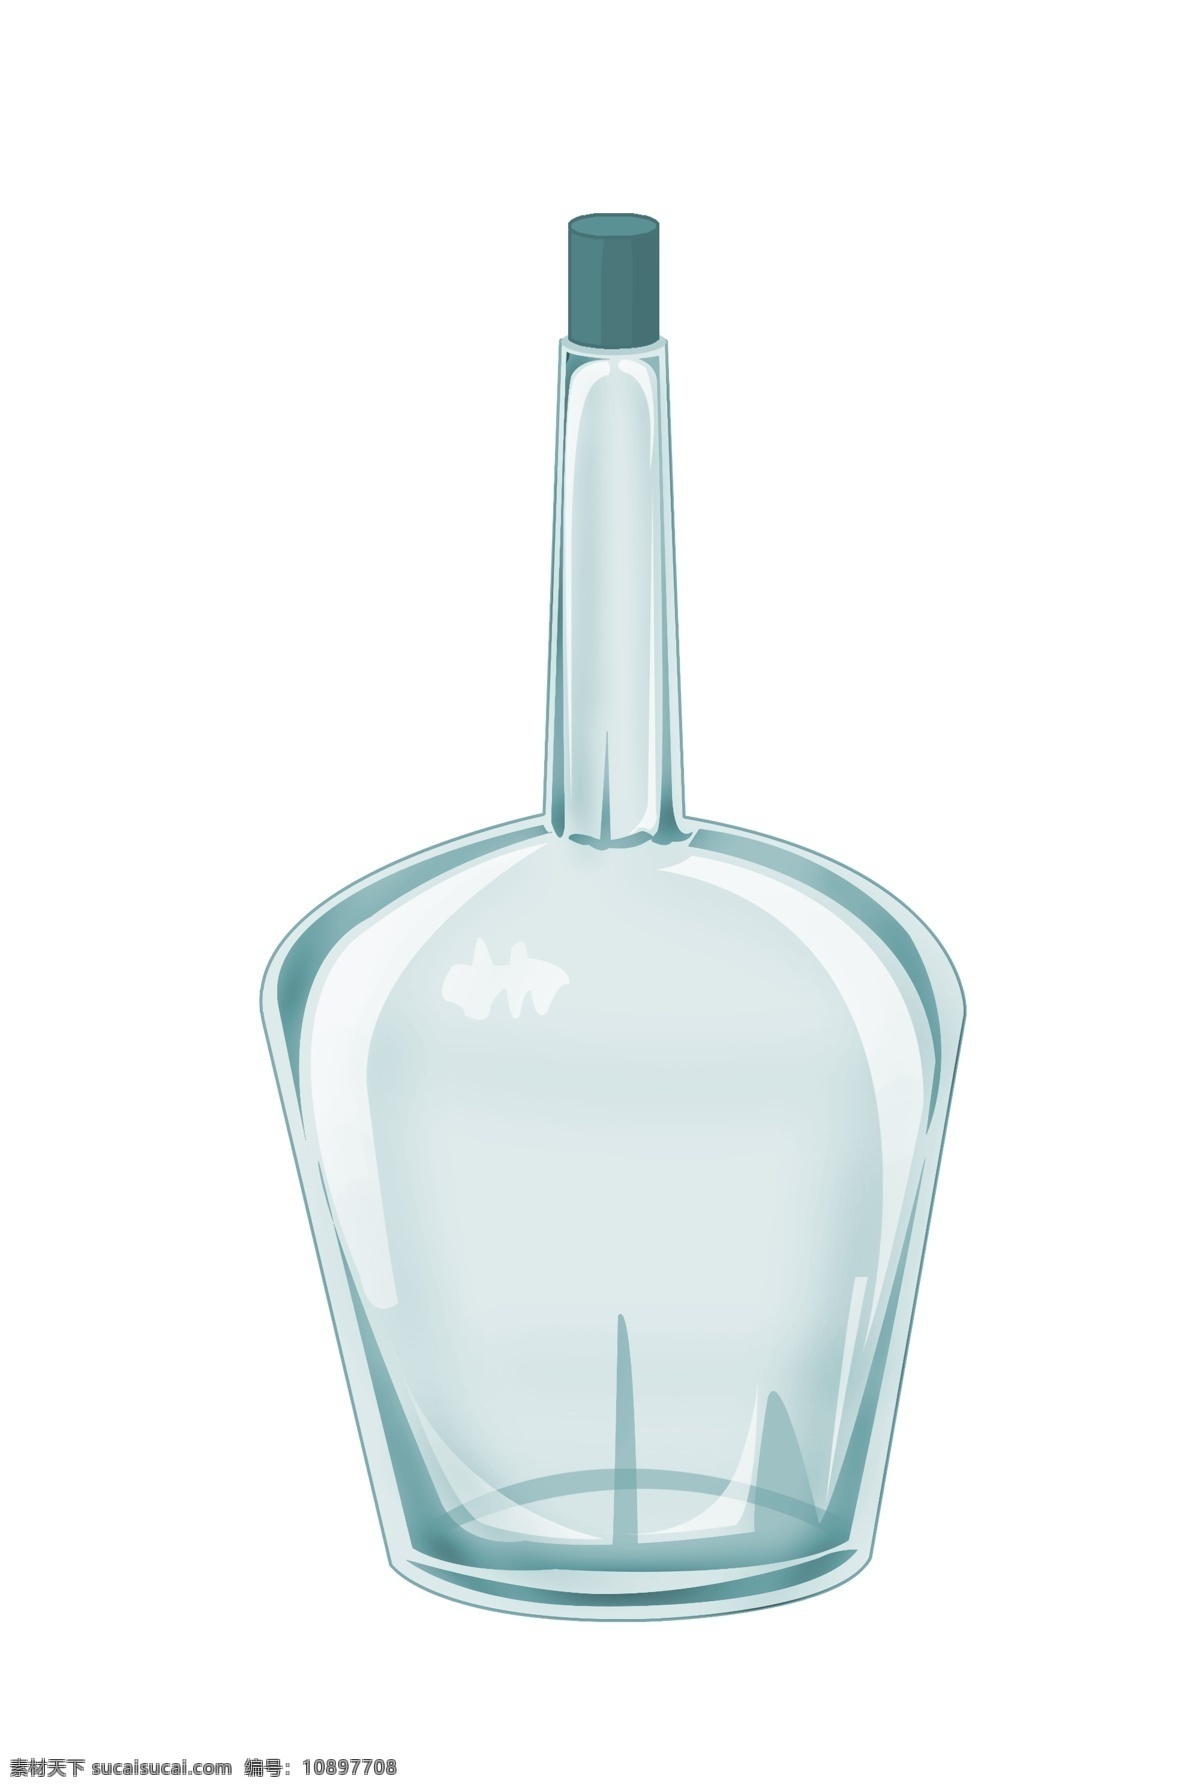 漂亮 瓶子 装饰 插画 漂亮的瓶子 容器瓶子 瓶子装饰 瓶子插画 立体瓶子 卡通瓶子 精美瓶子 玻璃瓶子